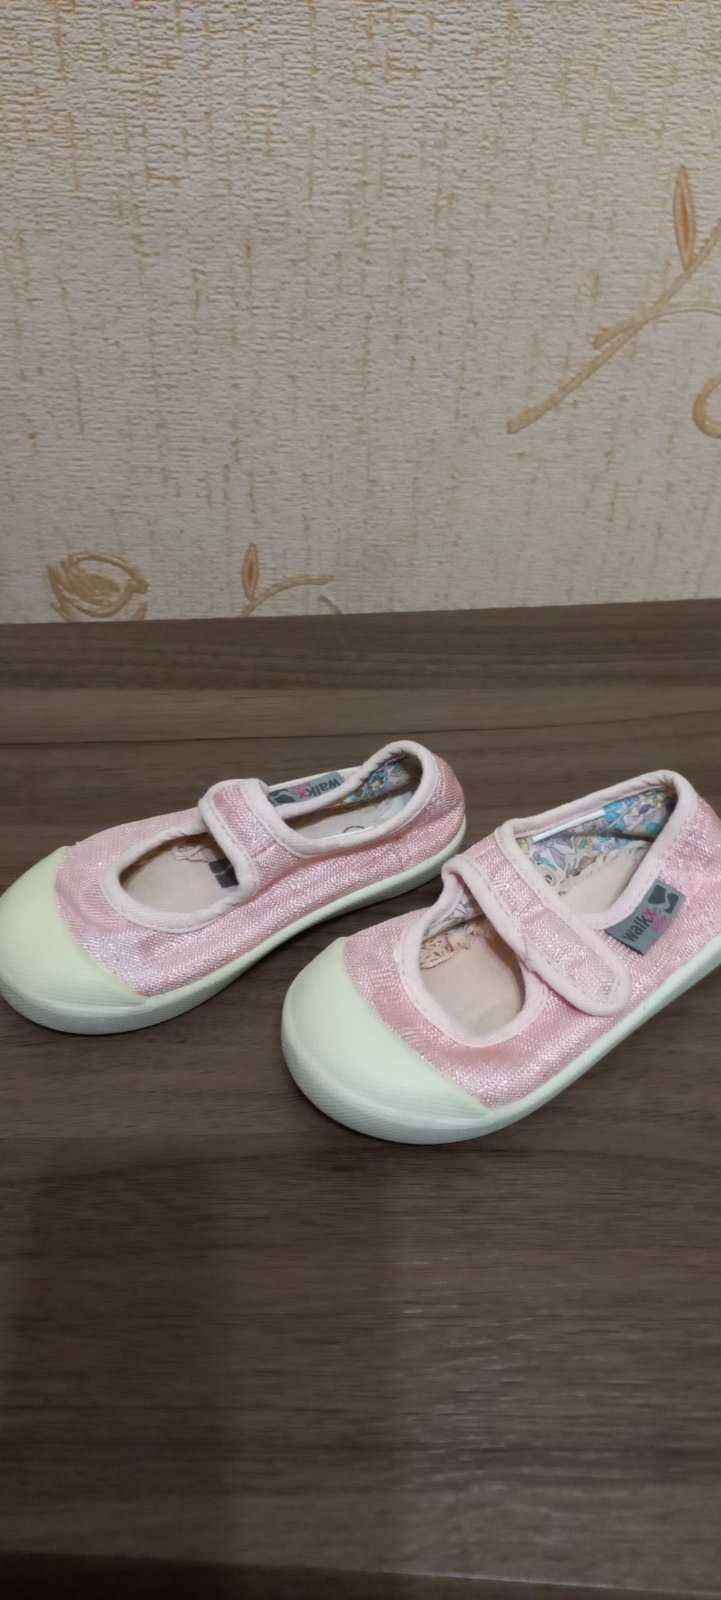 Продам обувь для ребенка